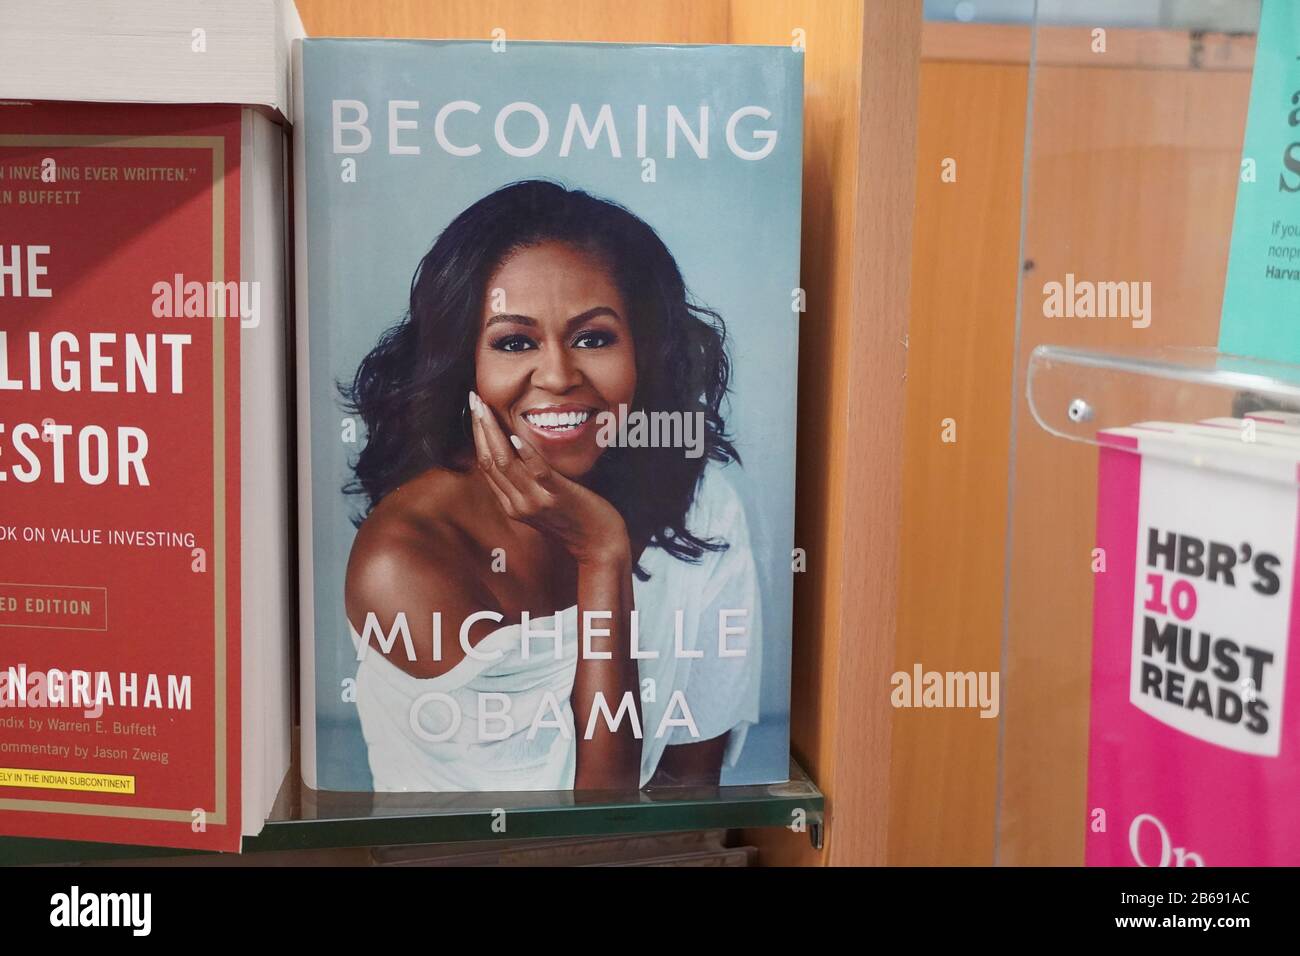 Das Buch wird von Michelle Obama in der Buchhandlung geschrieben. Bücher von Michelle Obama werden in den Regalen eines Buchladens ausgestellt. Bibliothek - Kochi, Indien: Jan Stockfoto